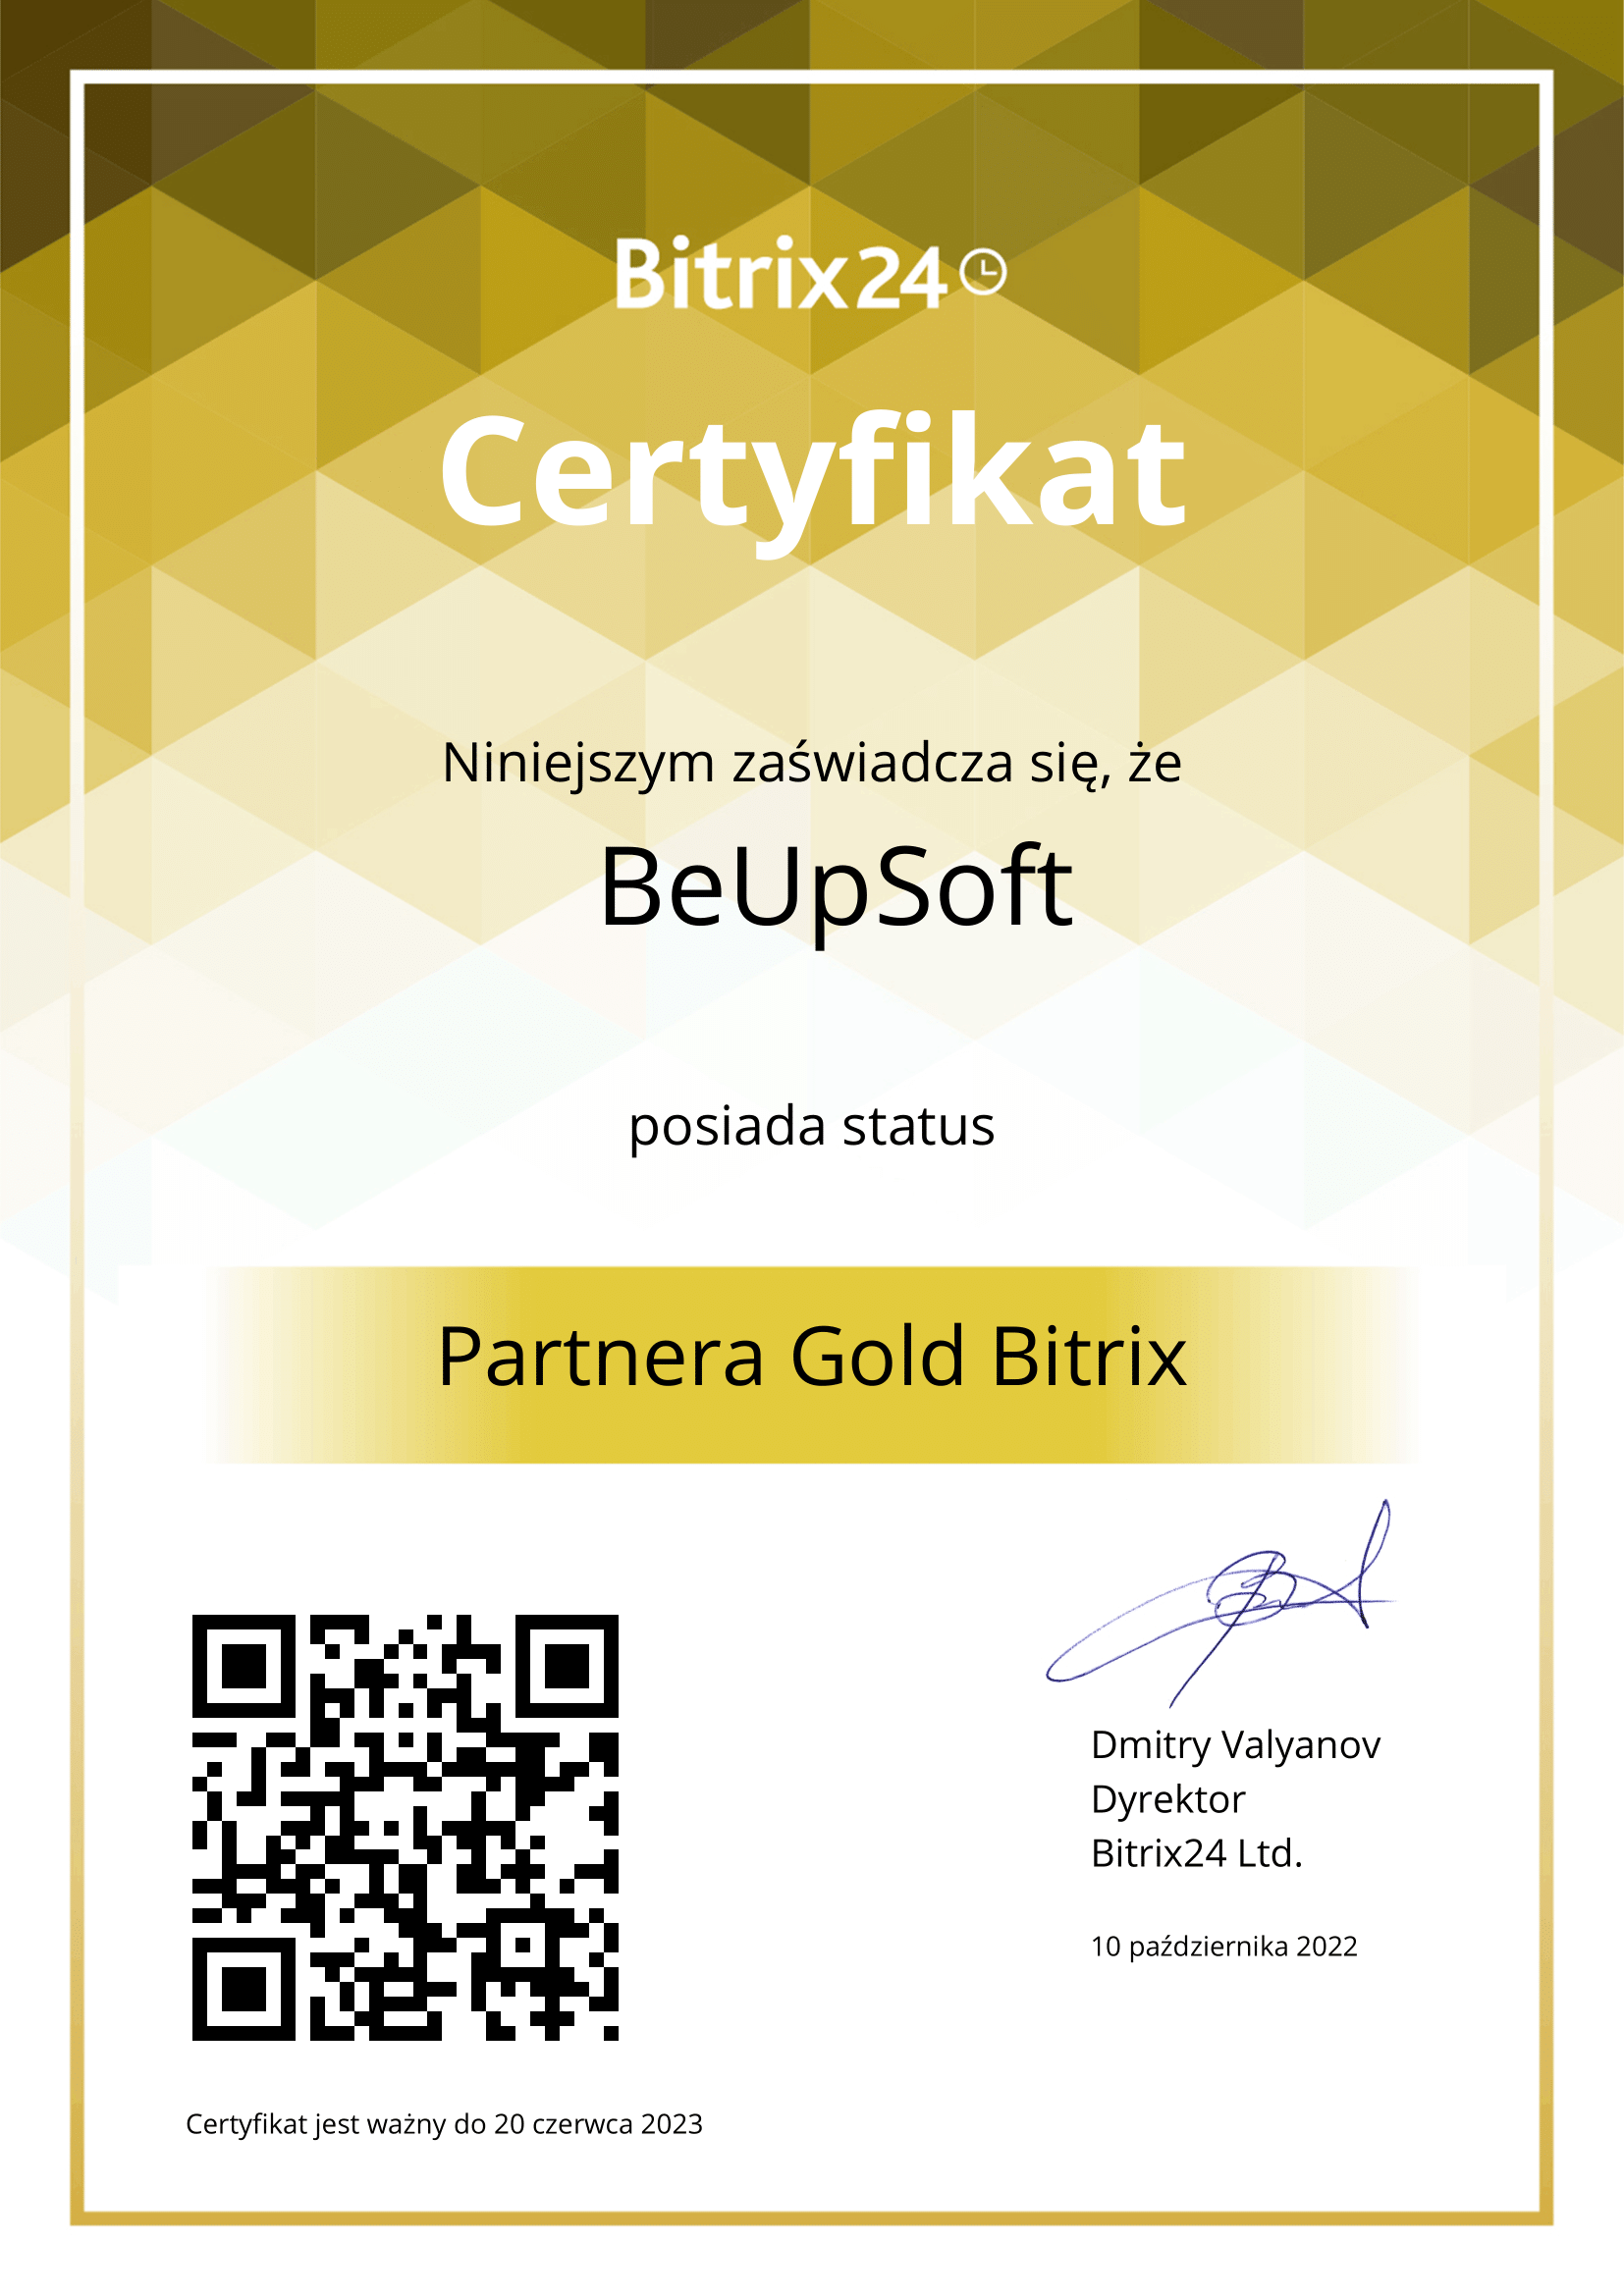 Złoty certyfikat Bitrix24